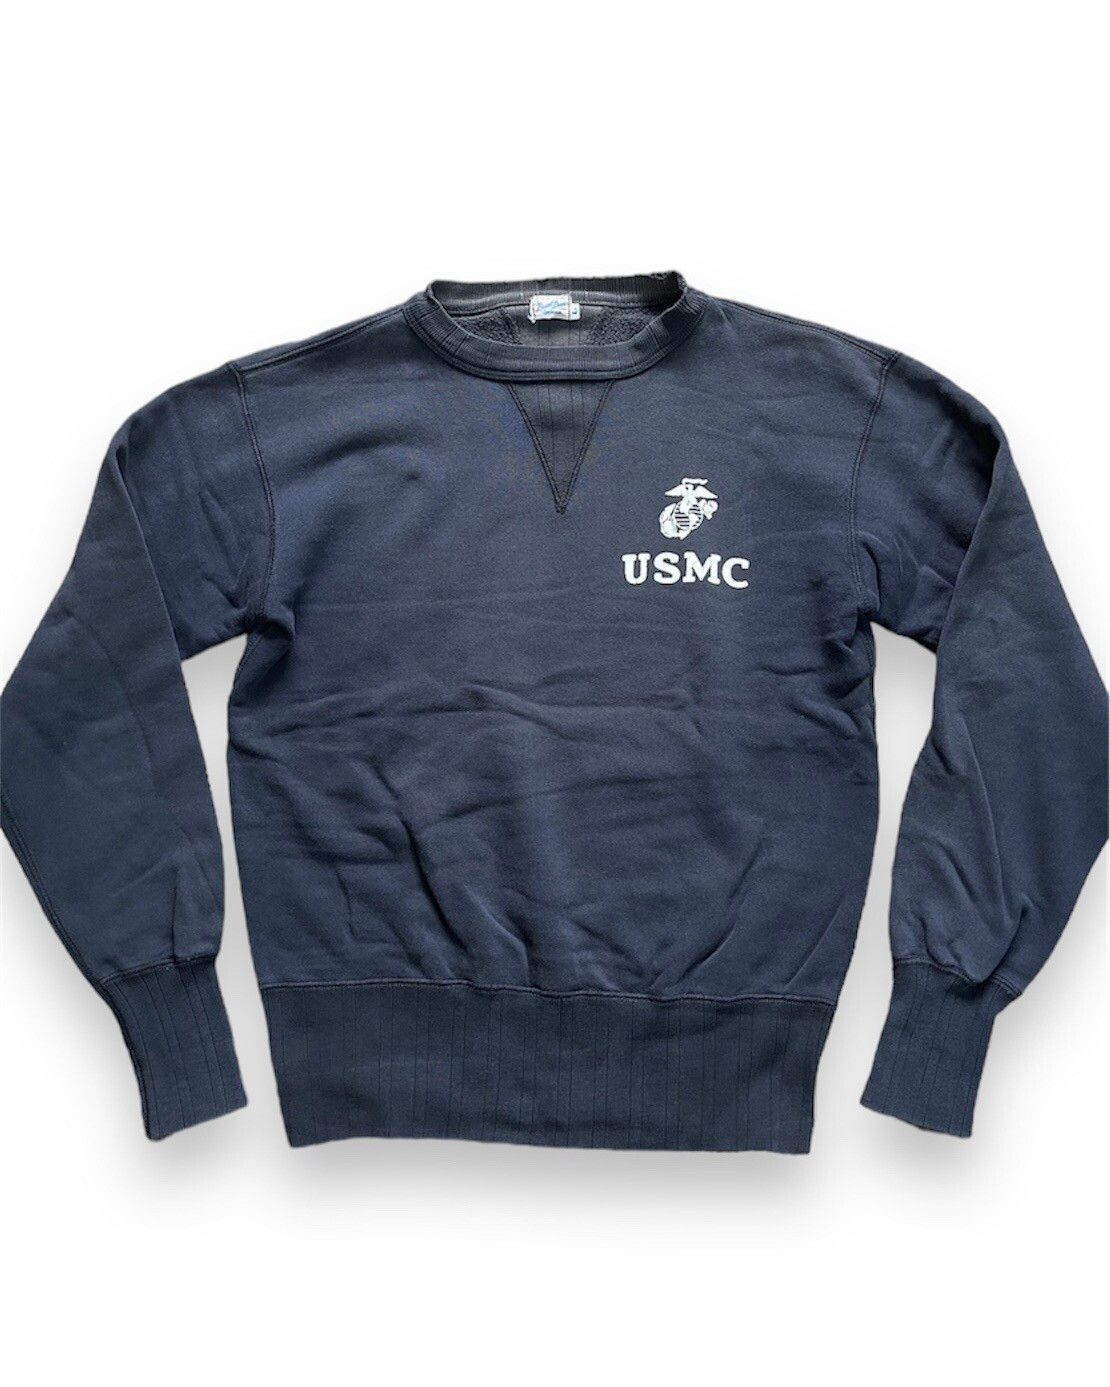 Vintage 1970s USMC Sweater US Marines Sportswear - 1